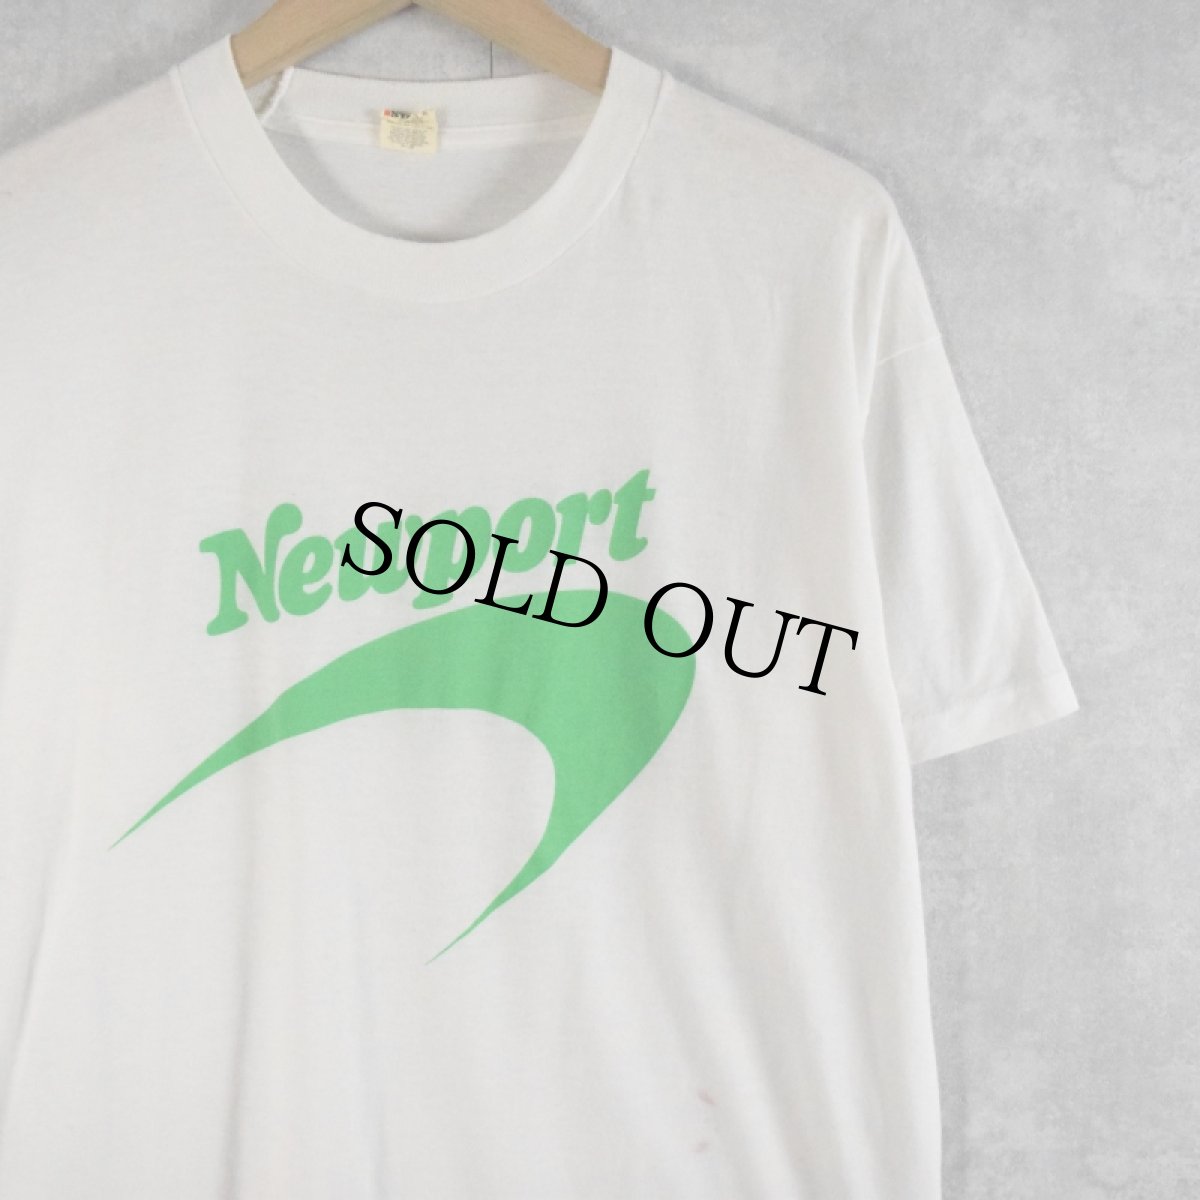 画像1: 80's USA製 "Newport pleasure!" ロゴプリントTシャツ L (1)